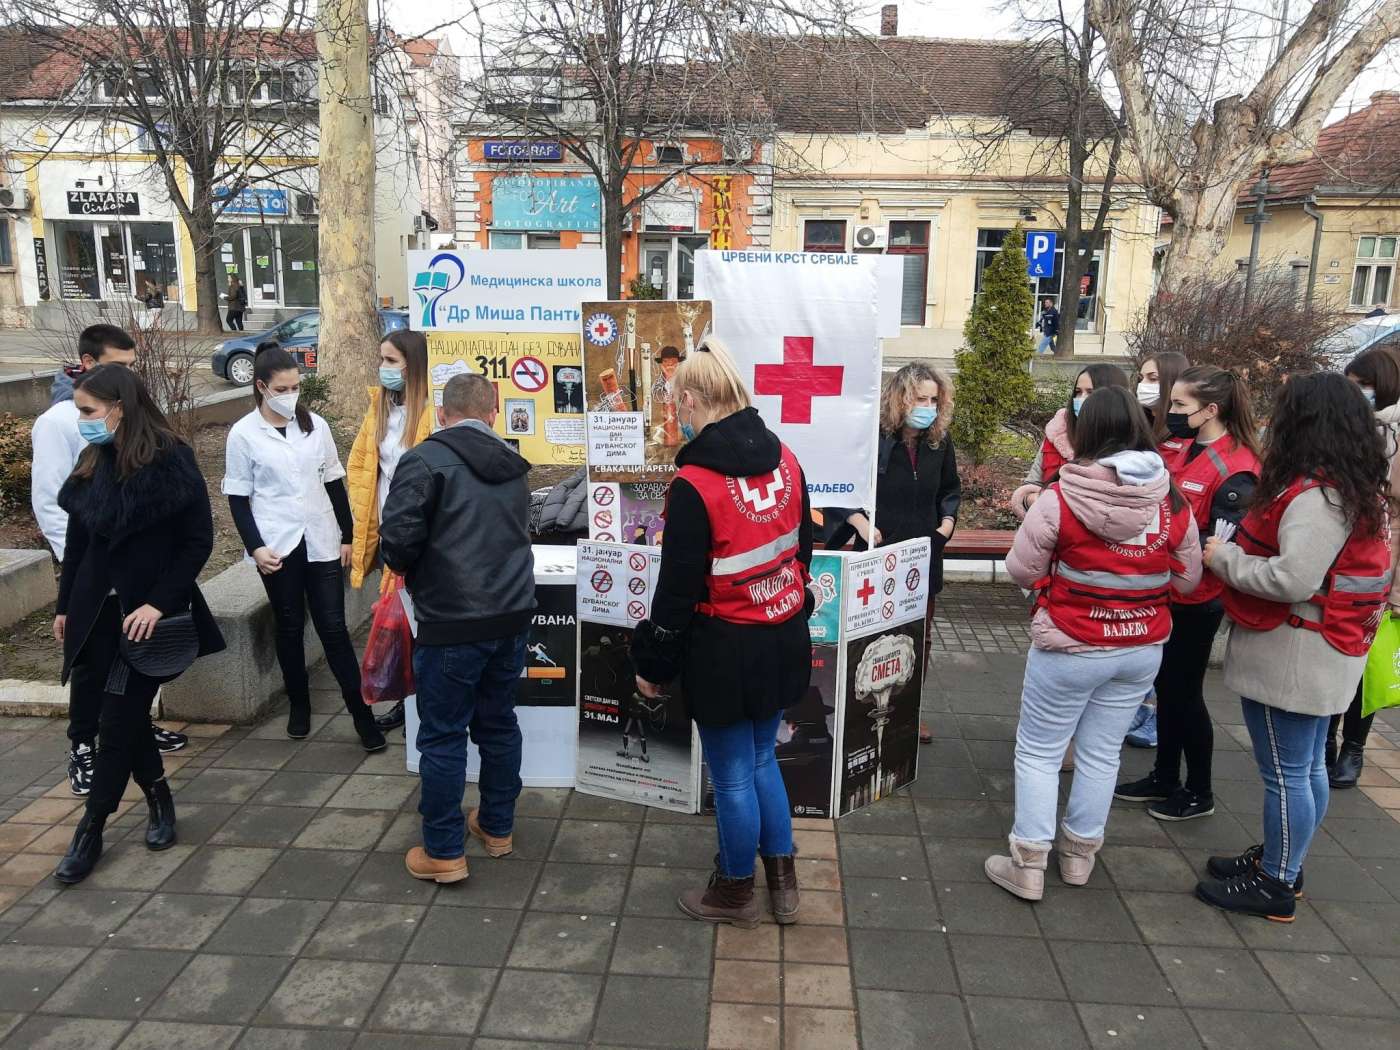 Nacionalni dan bez duvanskog dima pod sloganom: „365 DANA BEZ DUVANA”, Crveni krst Valjevo je obeležio centralnom uličnom manifestacijom, predavanjem u srednjoj školi i uličnom anketom uz poštovanje epidemioloških mera.